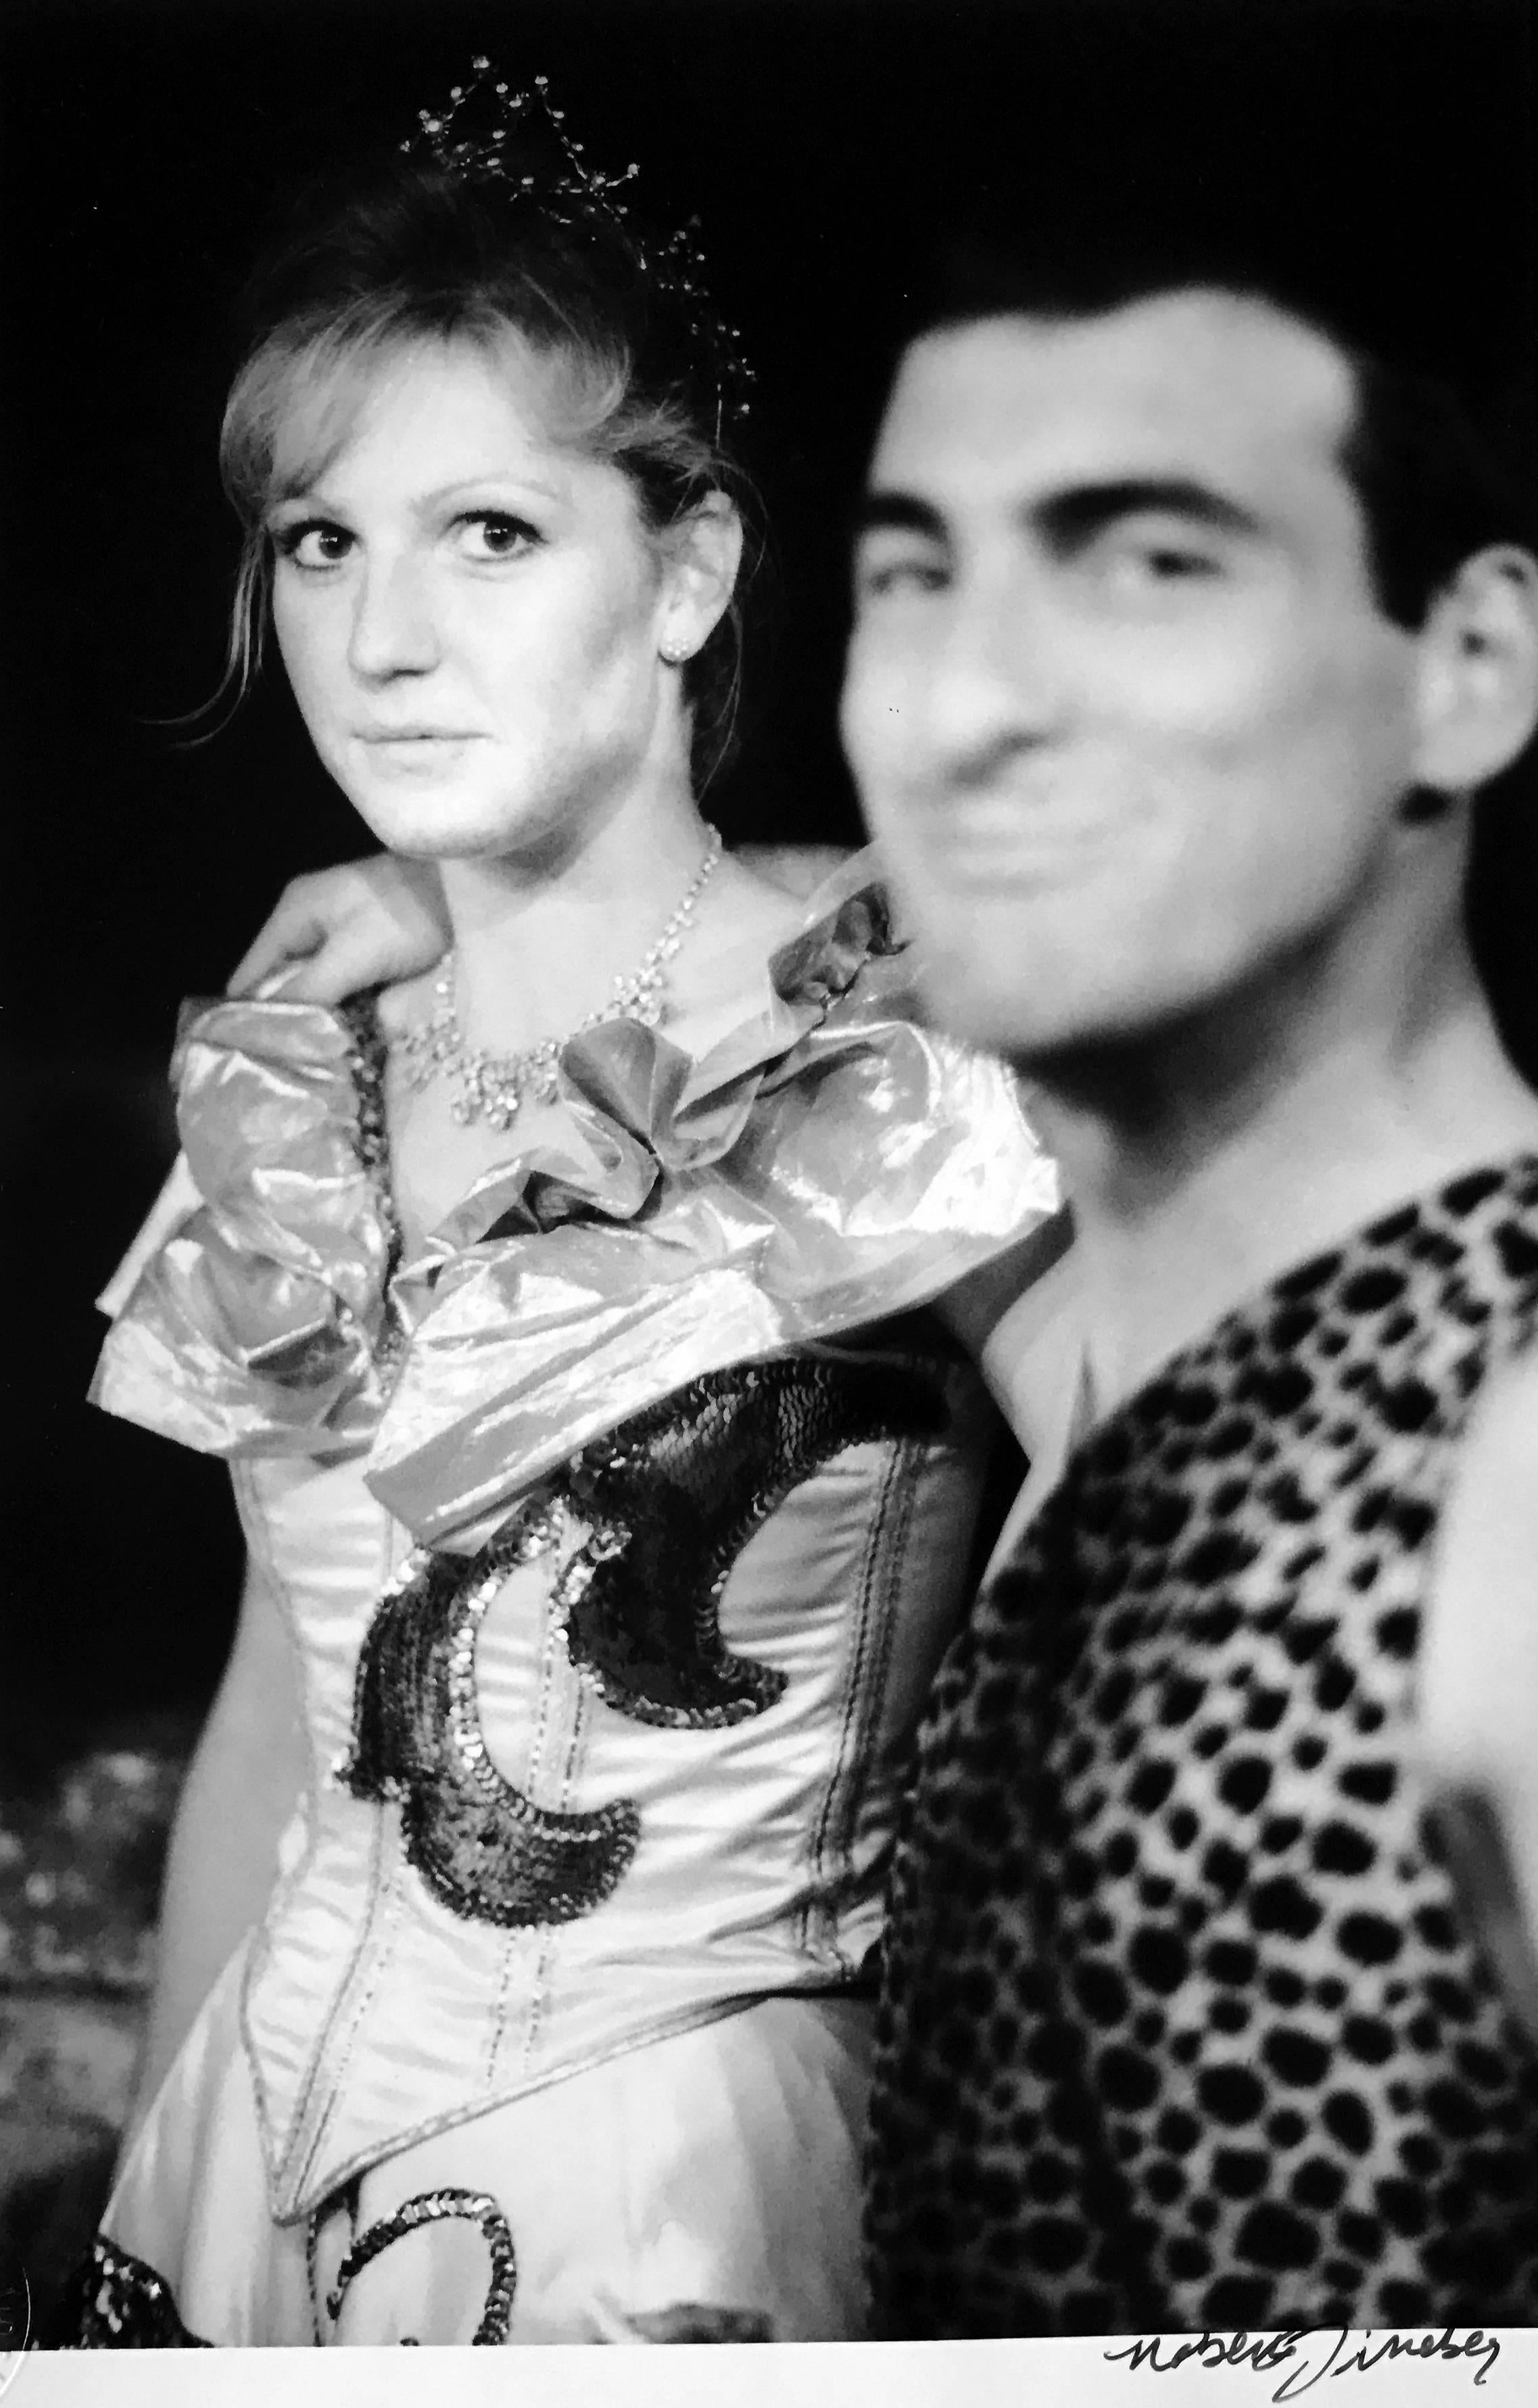 Roberta Fineberg Black and White Photograph – Maskenball, Frankreich, Klassische Schwarz-Weiß-Fotografie, Porträt eines Paares